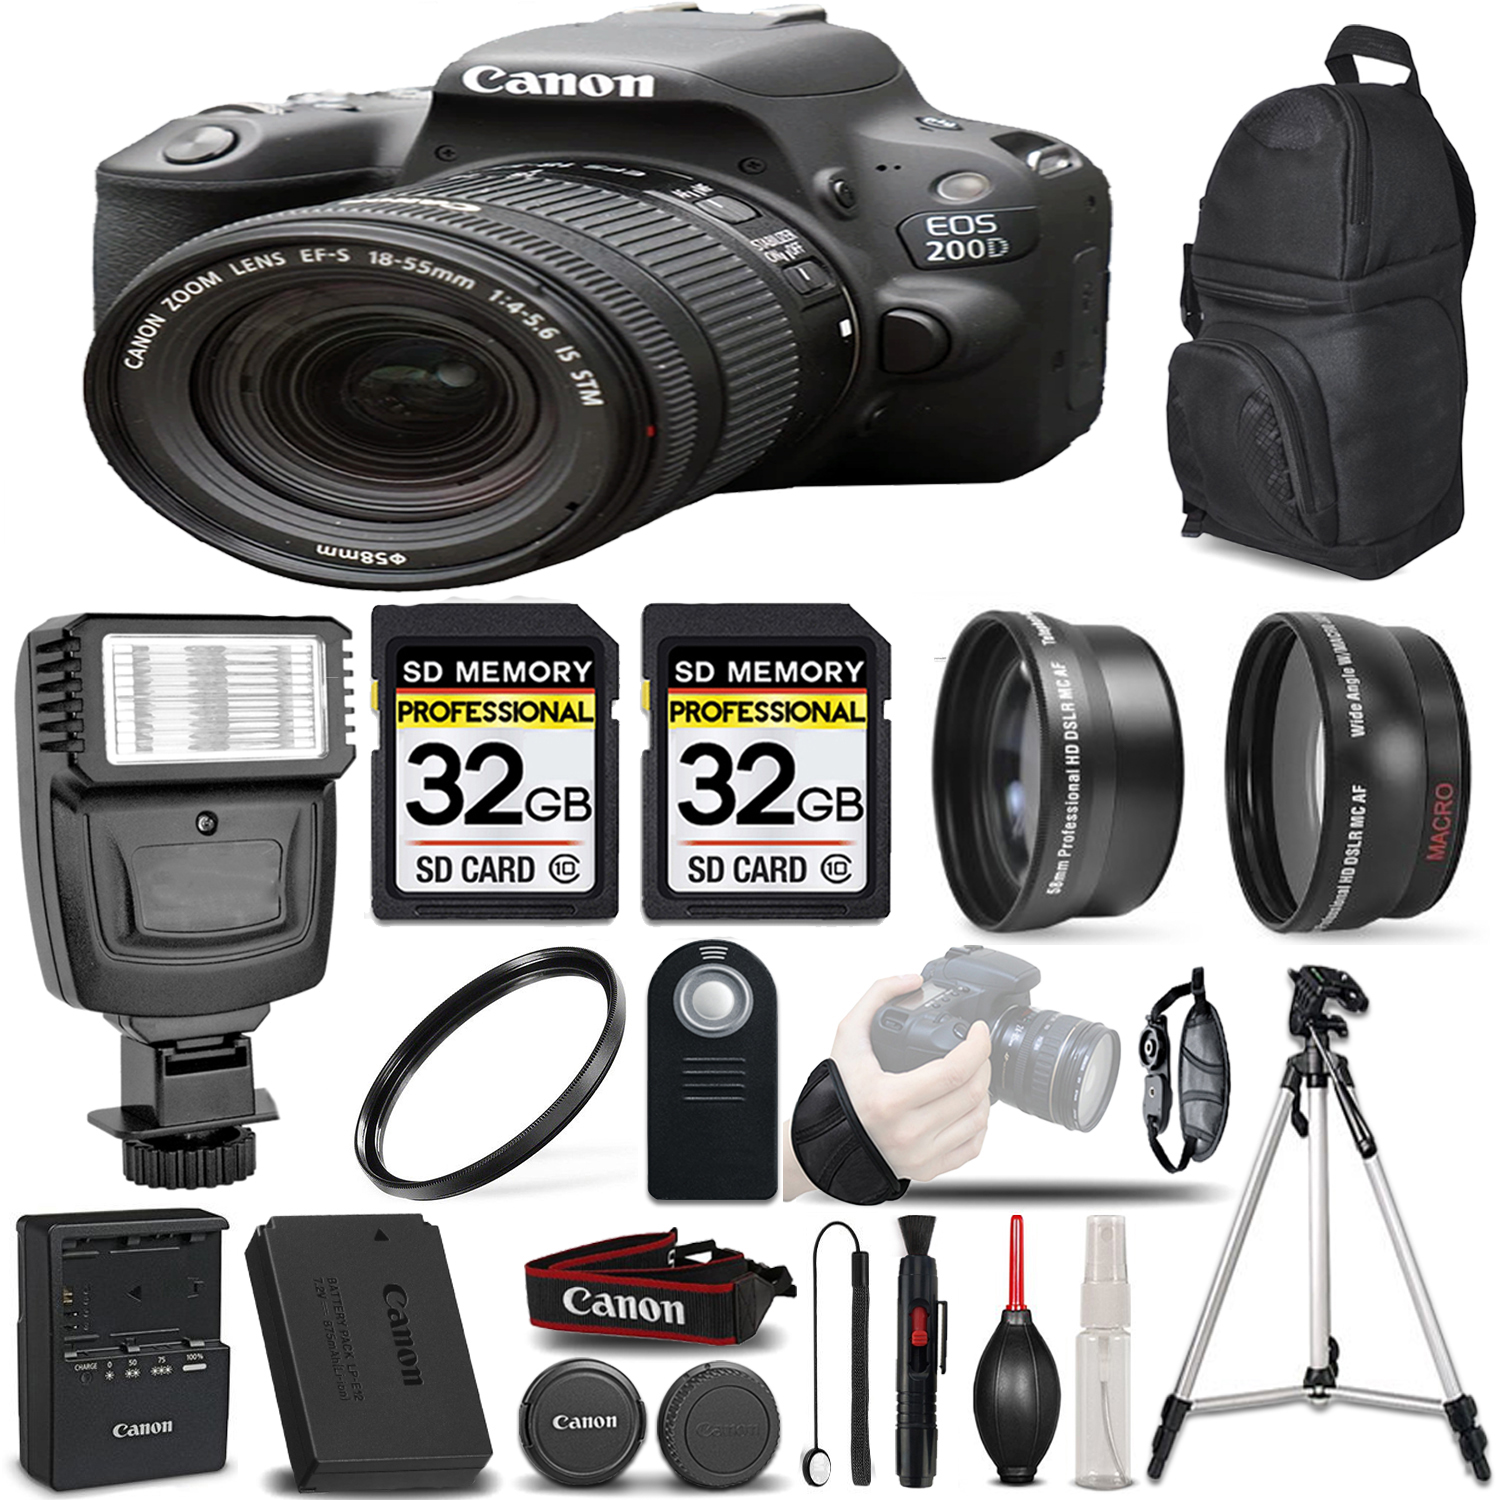 EOS Rebel 200D DSLR Camera (Black) - 3 Lens Kit + 64GB + PRO FLASH *FREE SHIPPING*